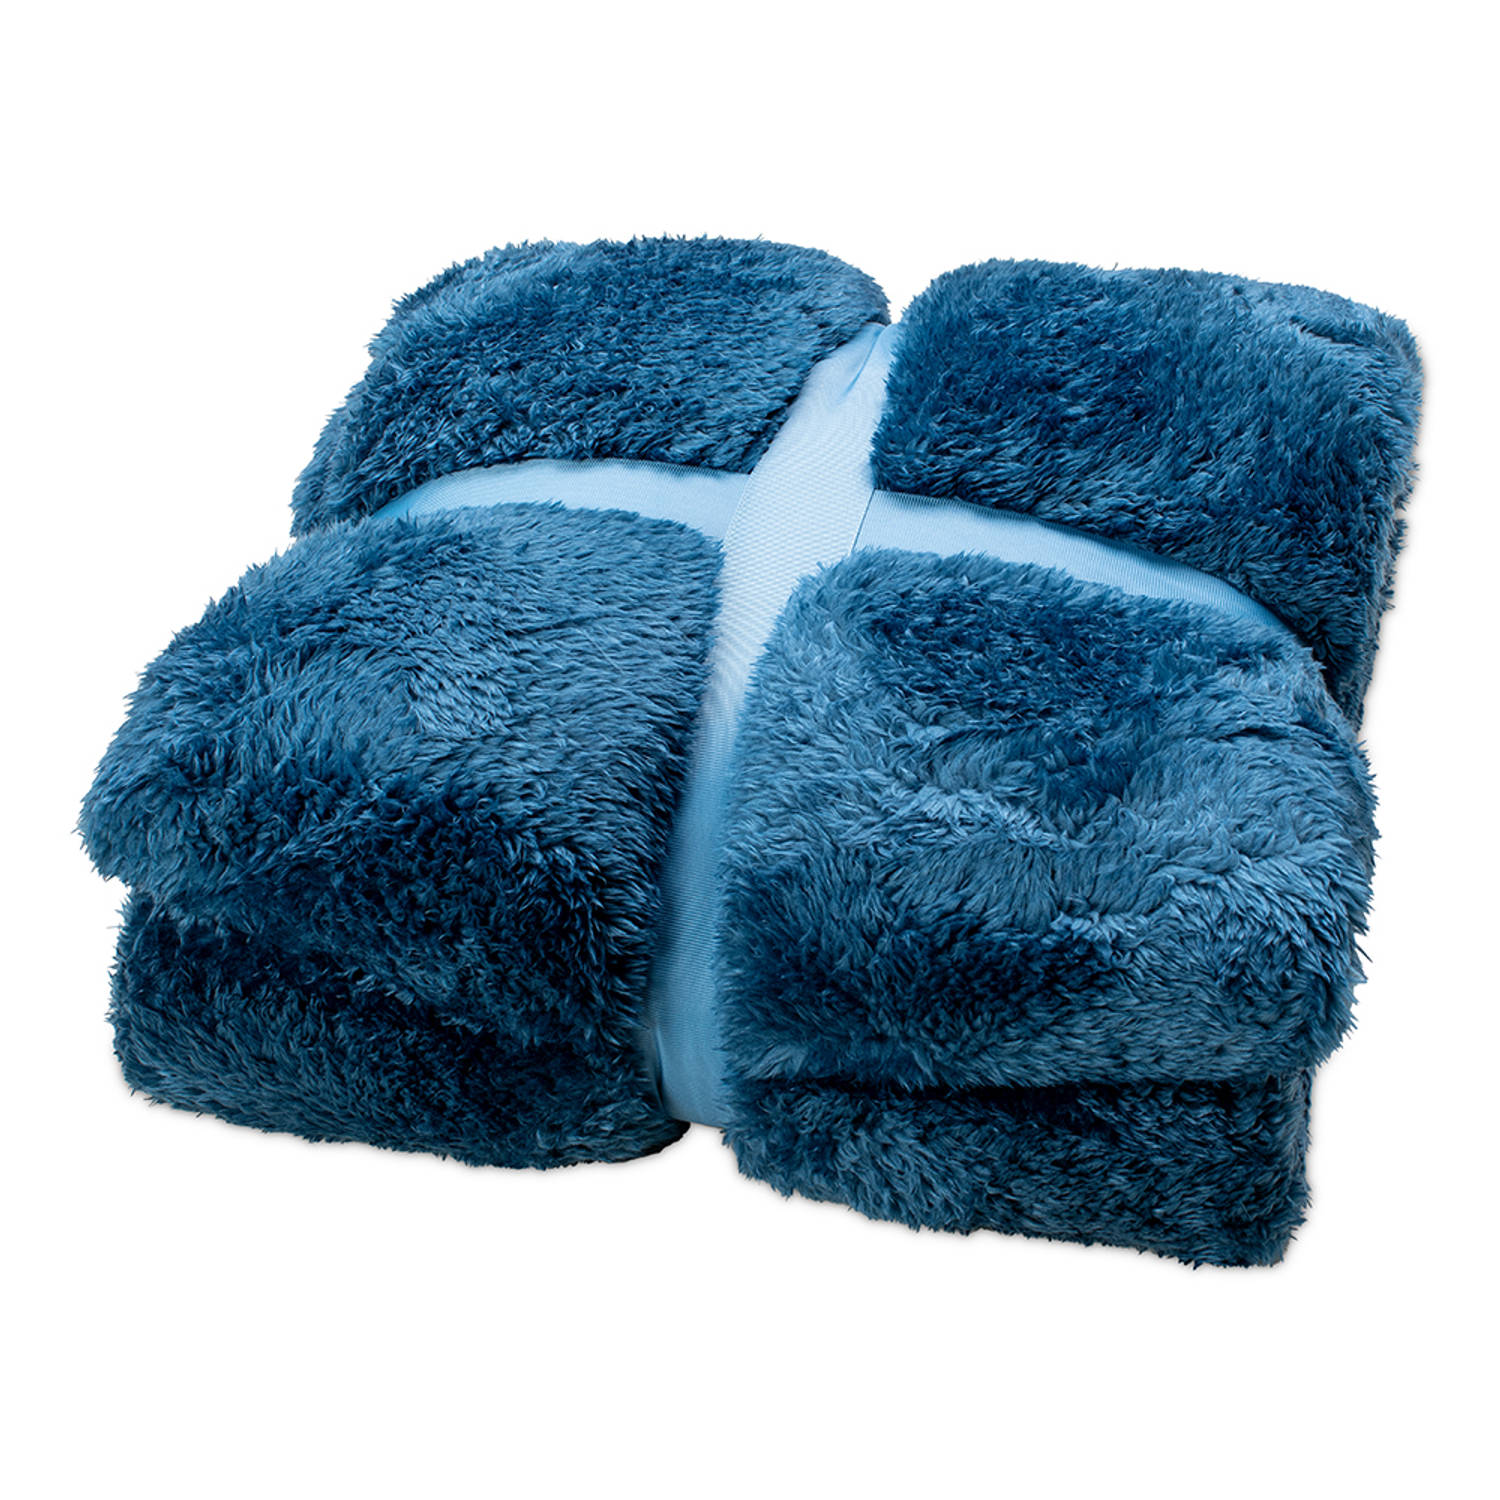 stad Dierentuin s nachts Groot universum Wicotex-Plaid-deken-fleece plaid Fluff blauw 150x200cm-Zacht en warme  Fleece deken. | Blokker